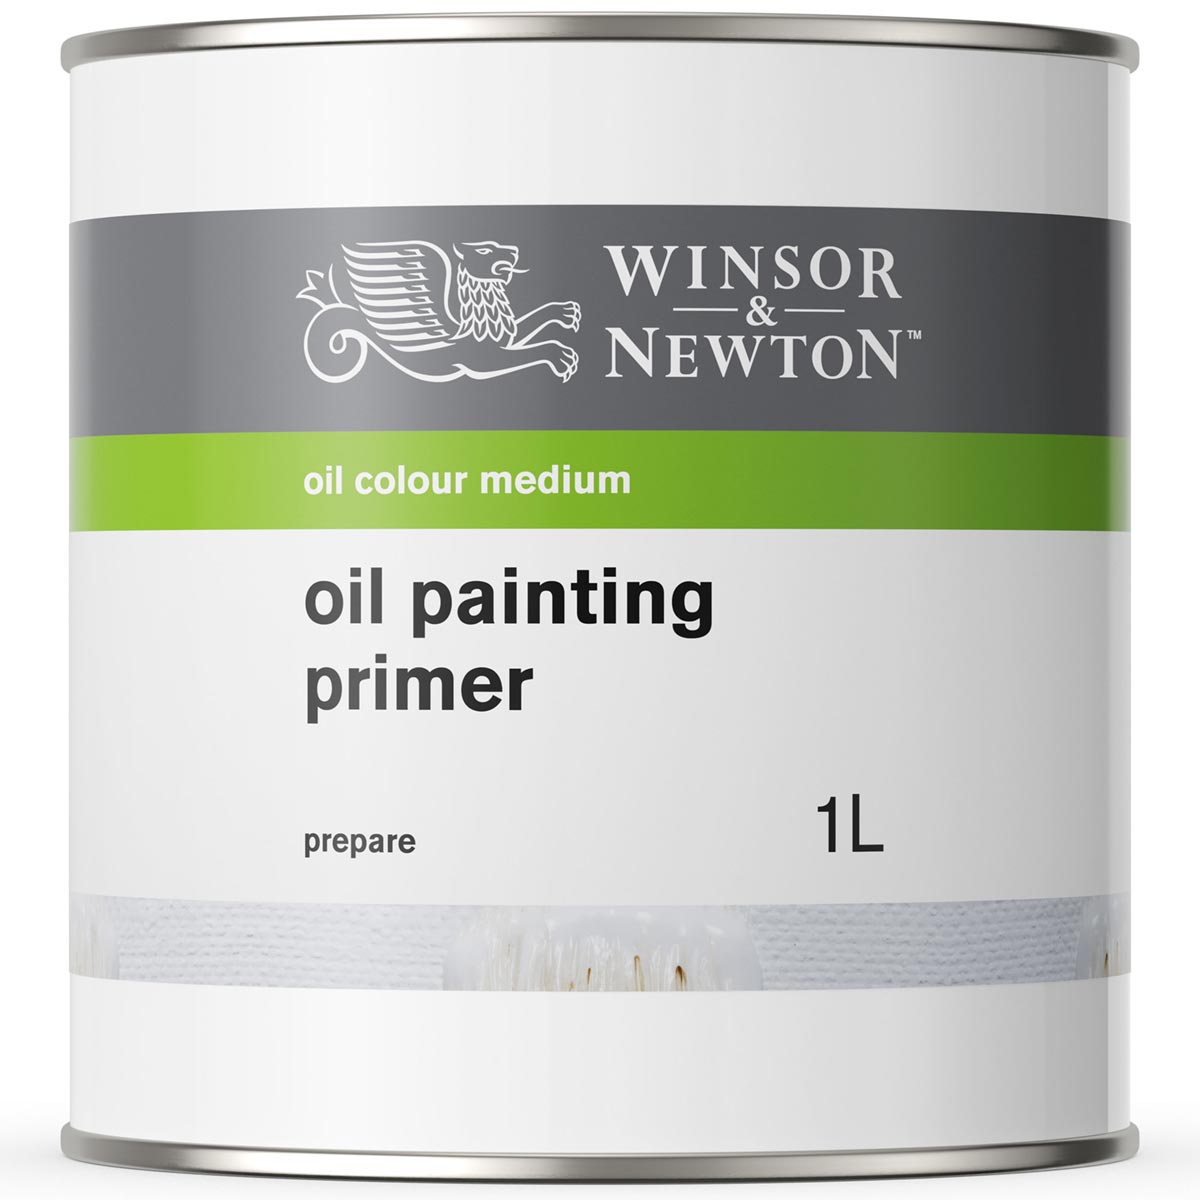 Winsor en Newton - Primer van olieverfschilderen - 1 liter